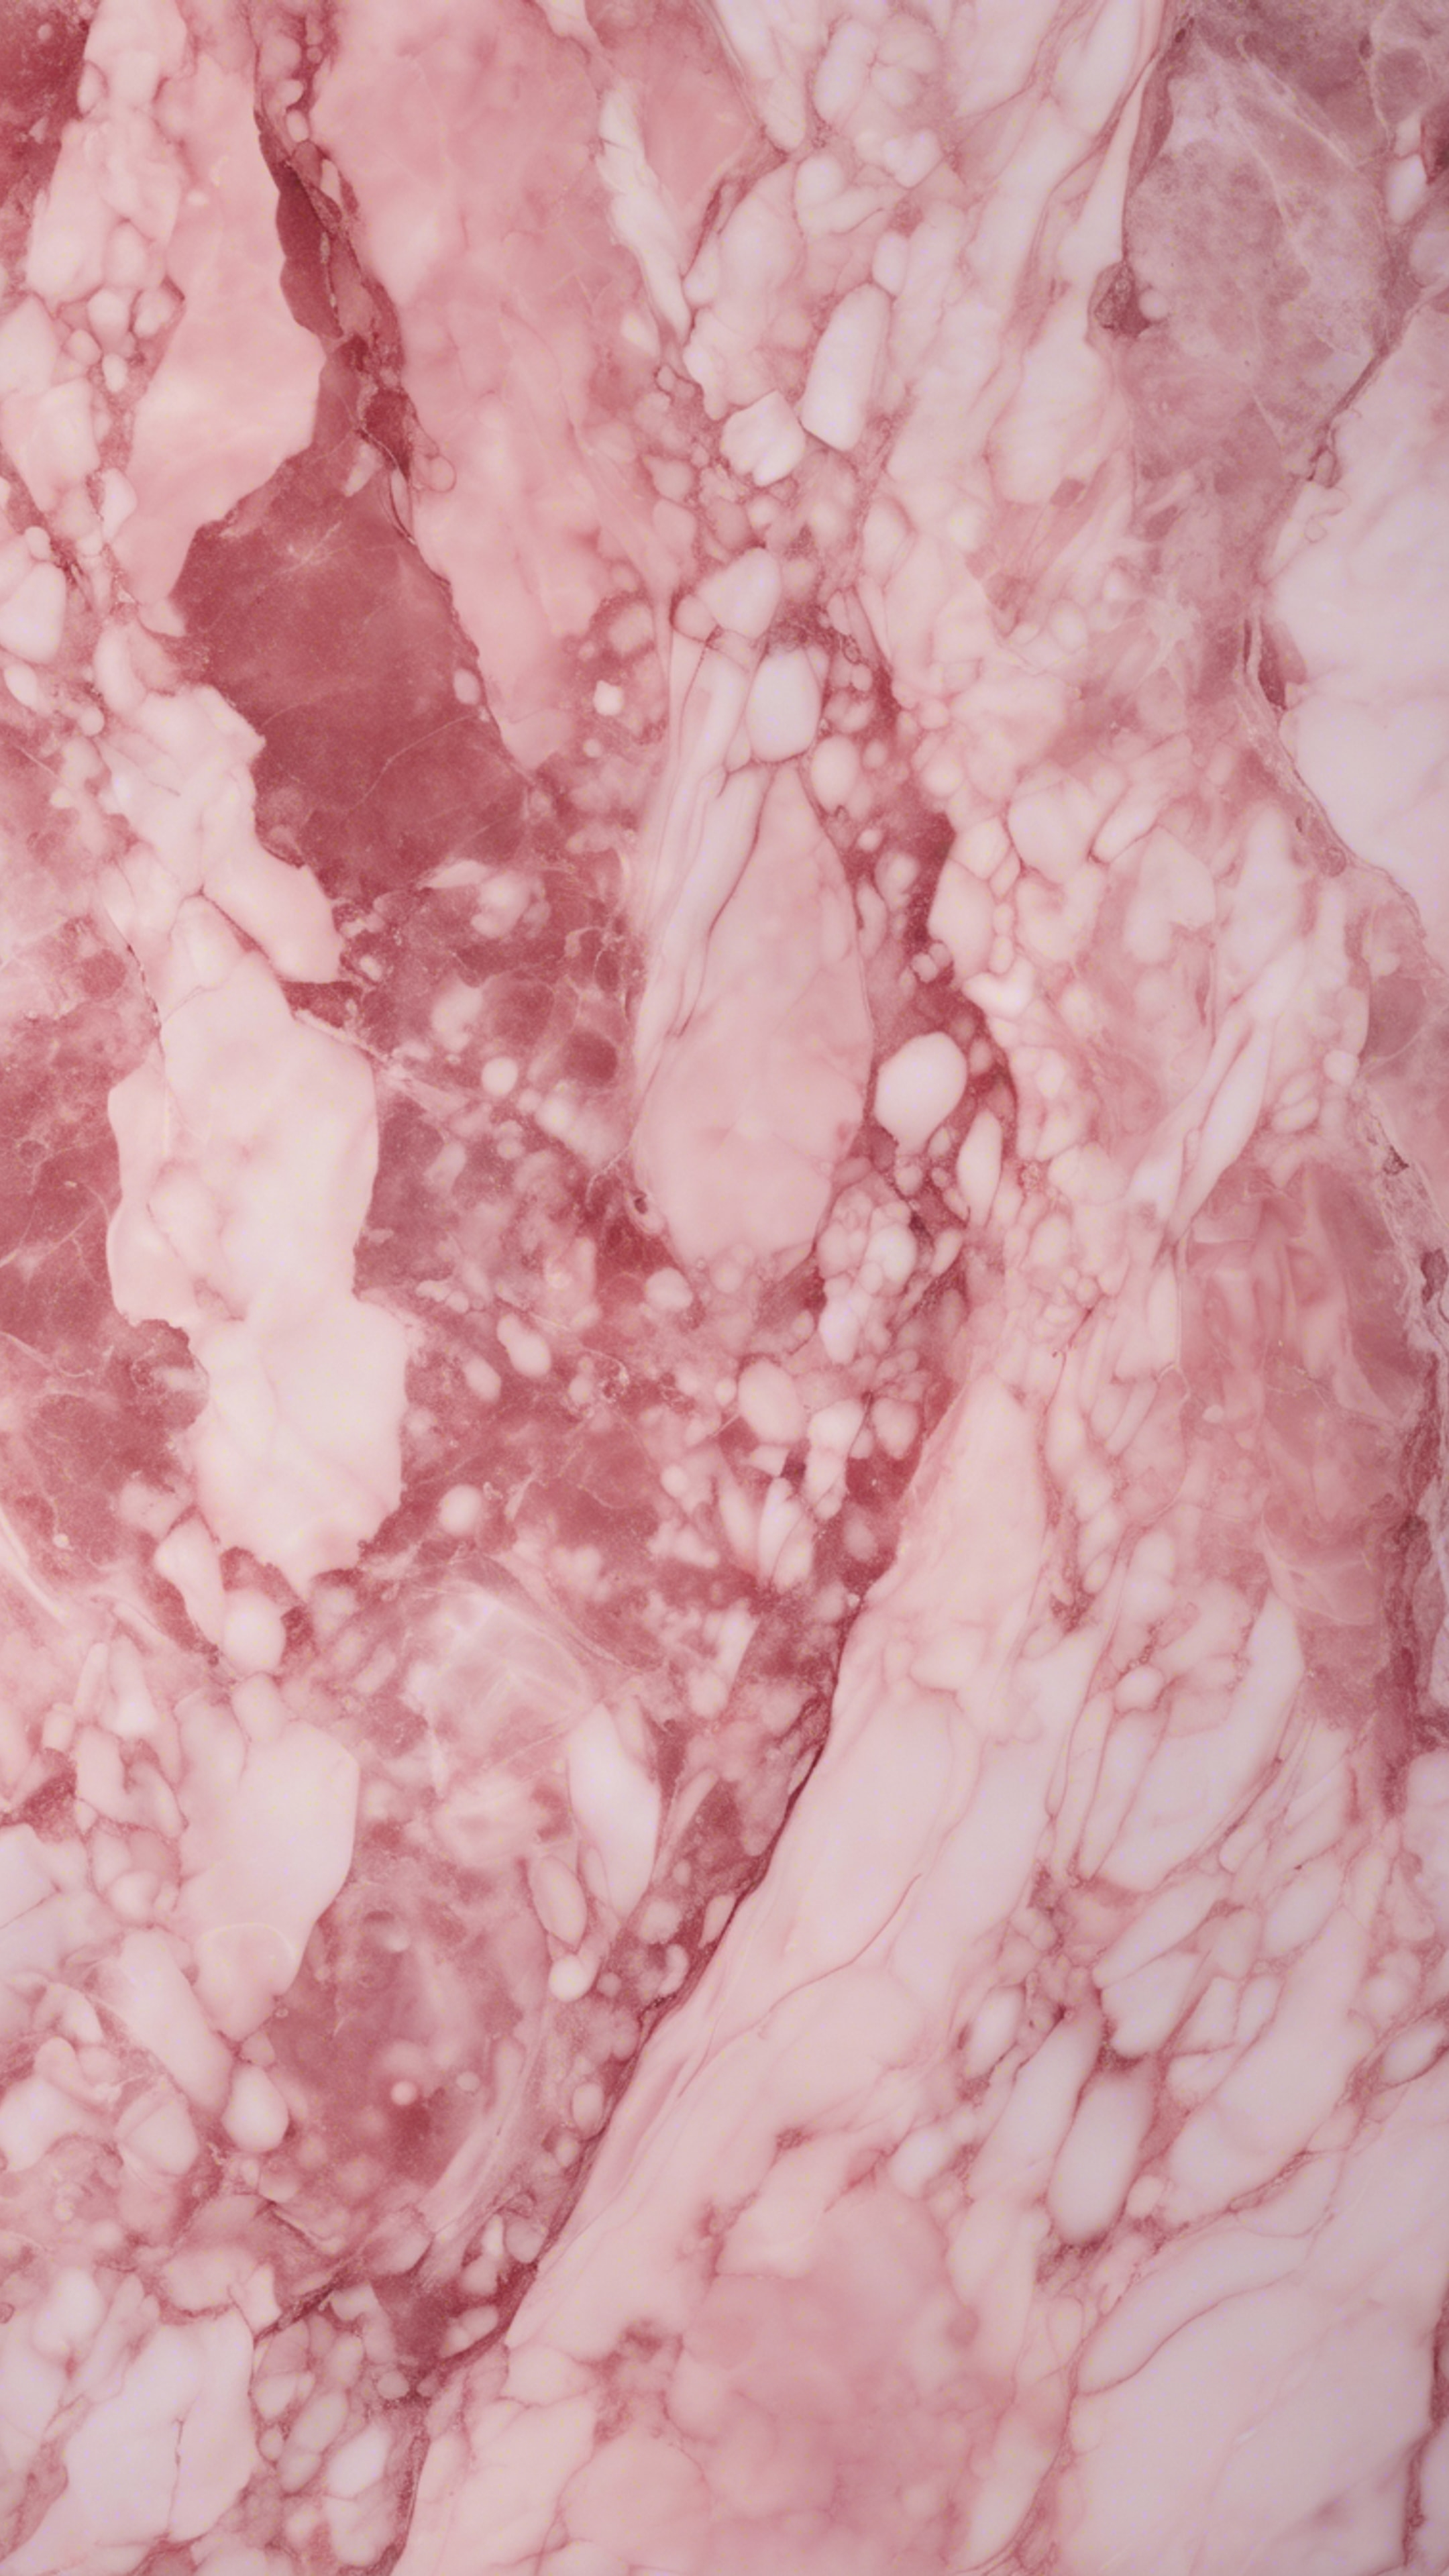 Pink marble texture viewed under faint sunlight.壁紙[45cdb092df8543e48e23]